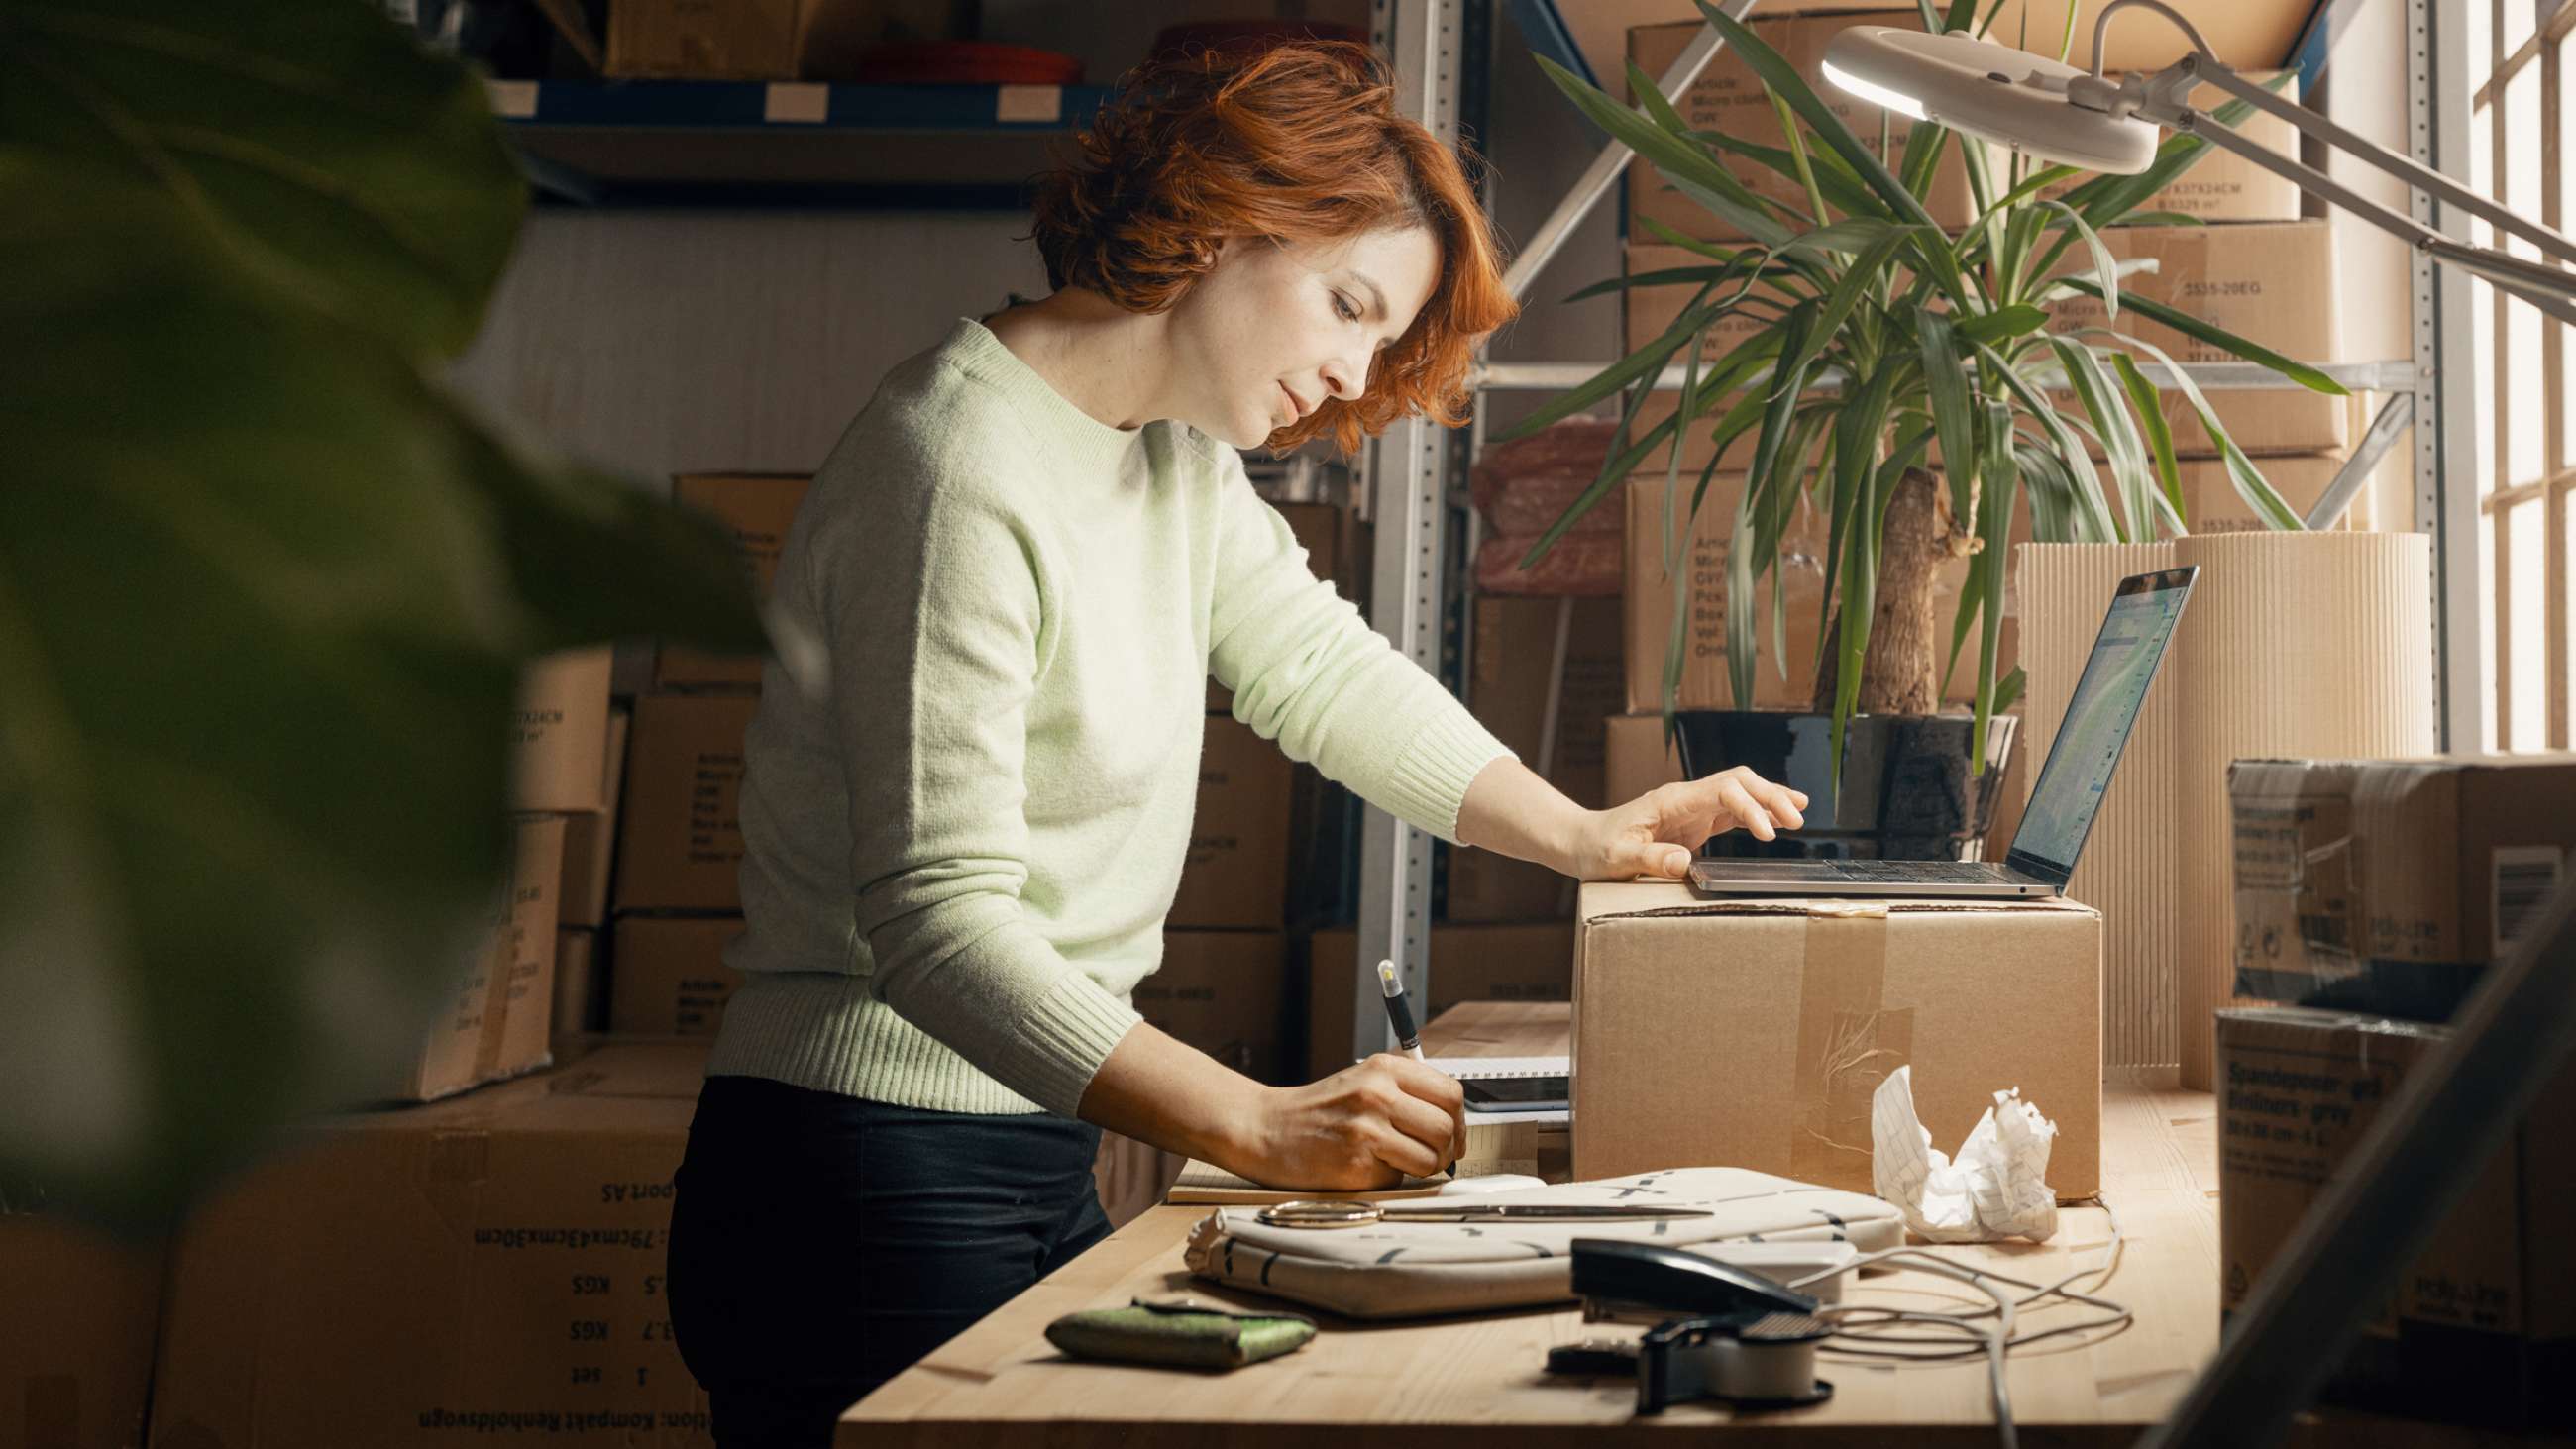 Kvindelig indehaver af en netbutik står med en papkasse på et arbejdsbord med mange kasser i baggrunden. Hun skriver på en blok, mens hun holder den anden hånd på en åben laptop.